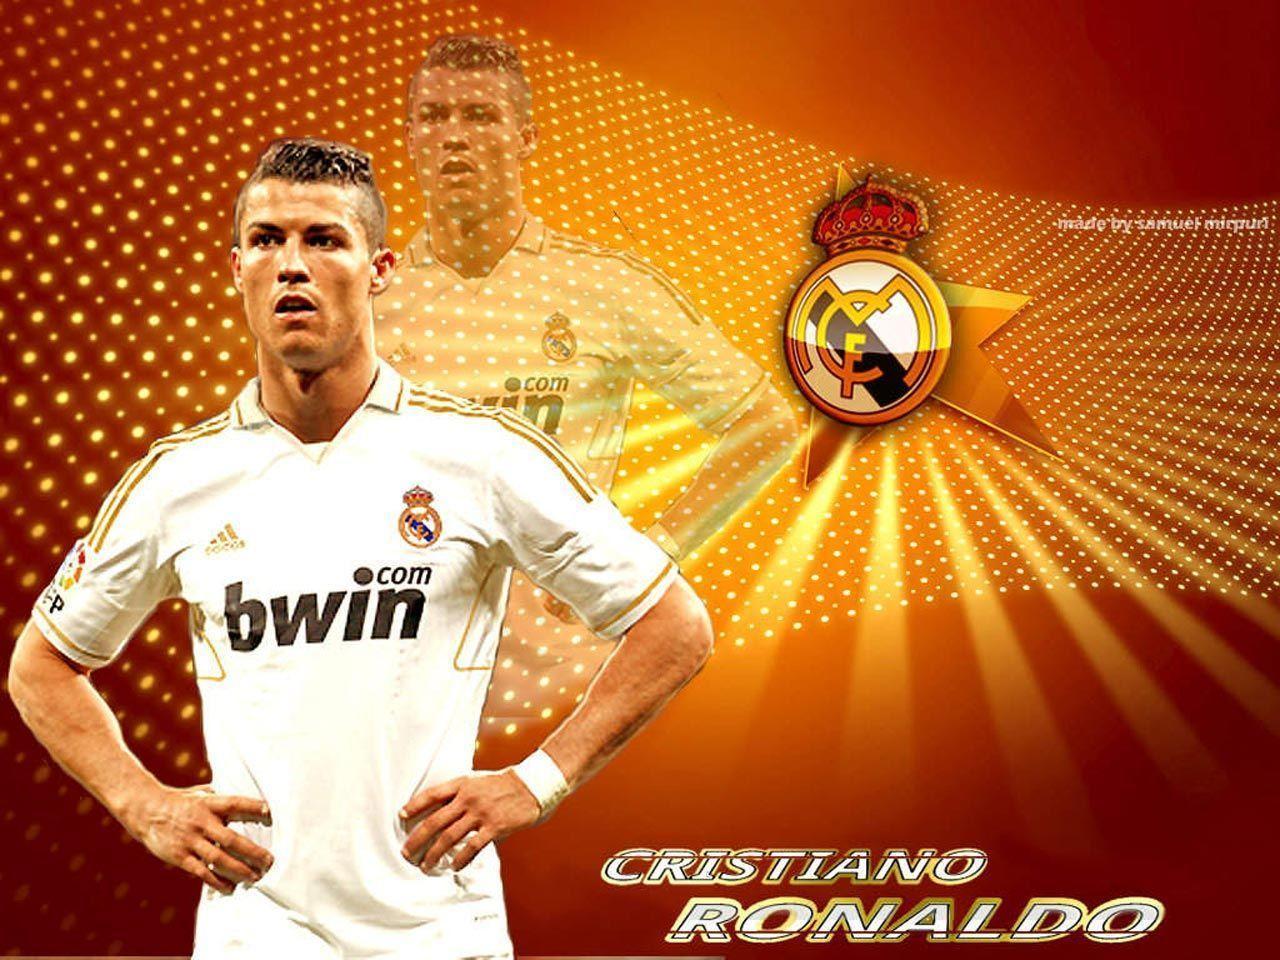 Wallpaper Of C Ronaldo